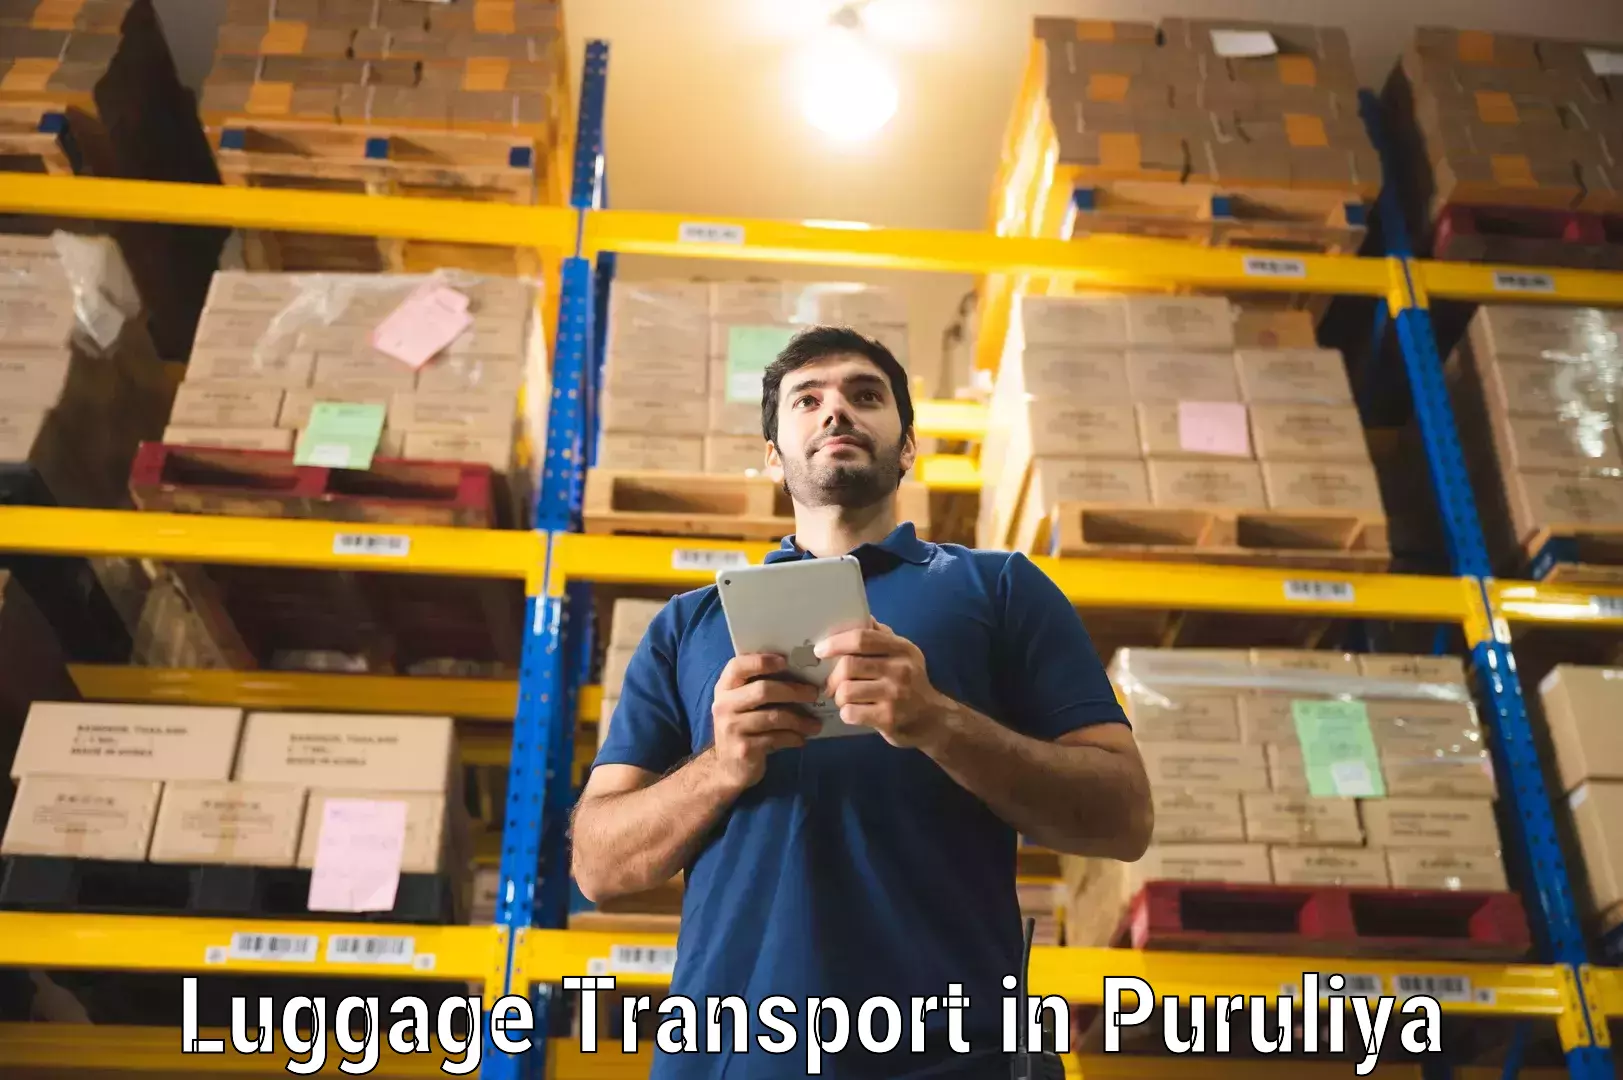 Luggage transfer service in Puruliya